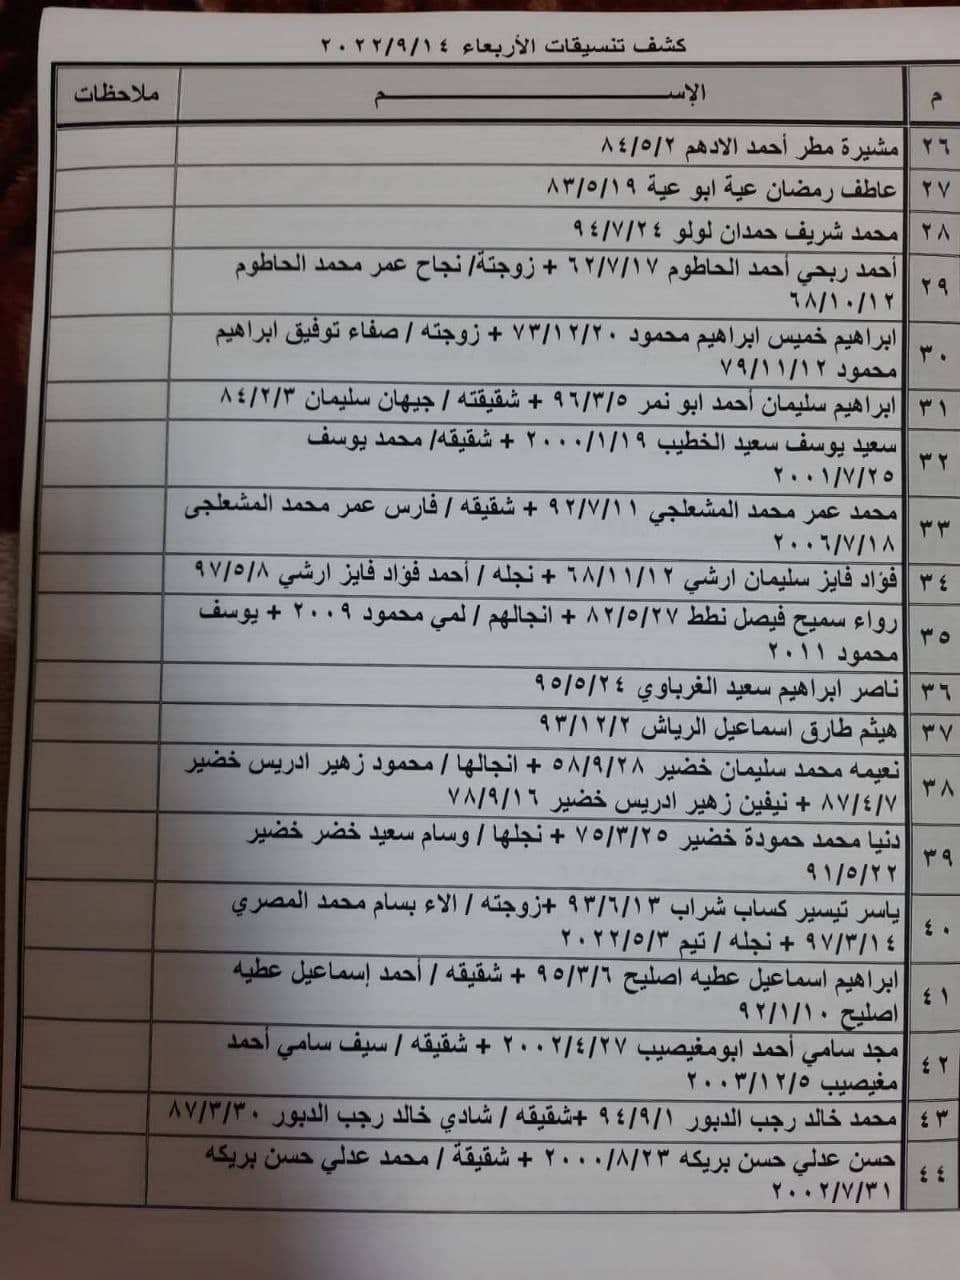 بالأسماء: كشف "تنسيقات مصرية" للسفر عبر معبر رفح يوم الأربعاء 14 سبتمبر